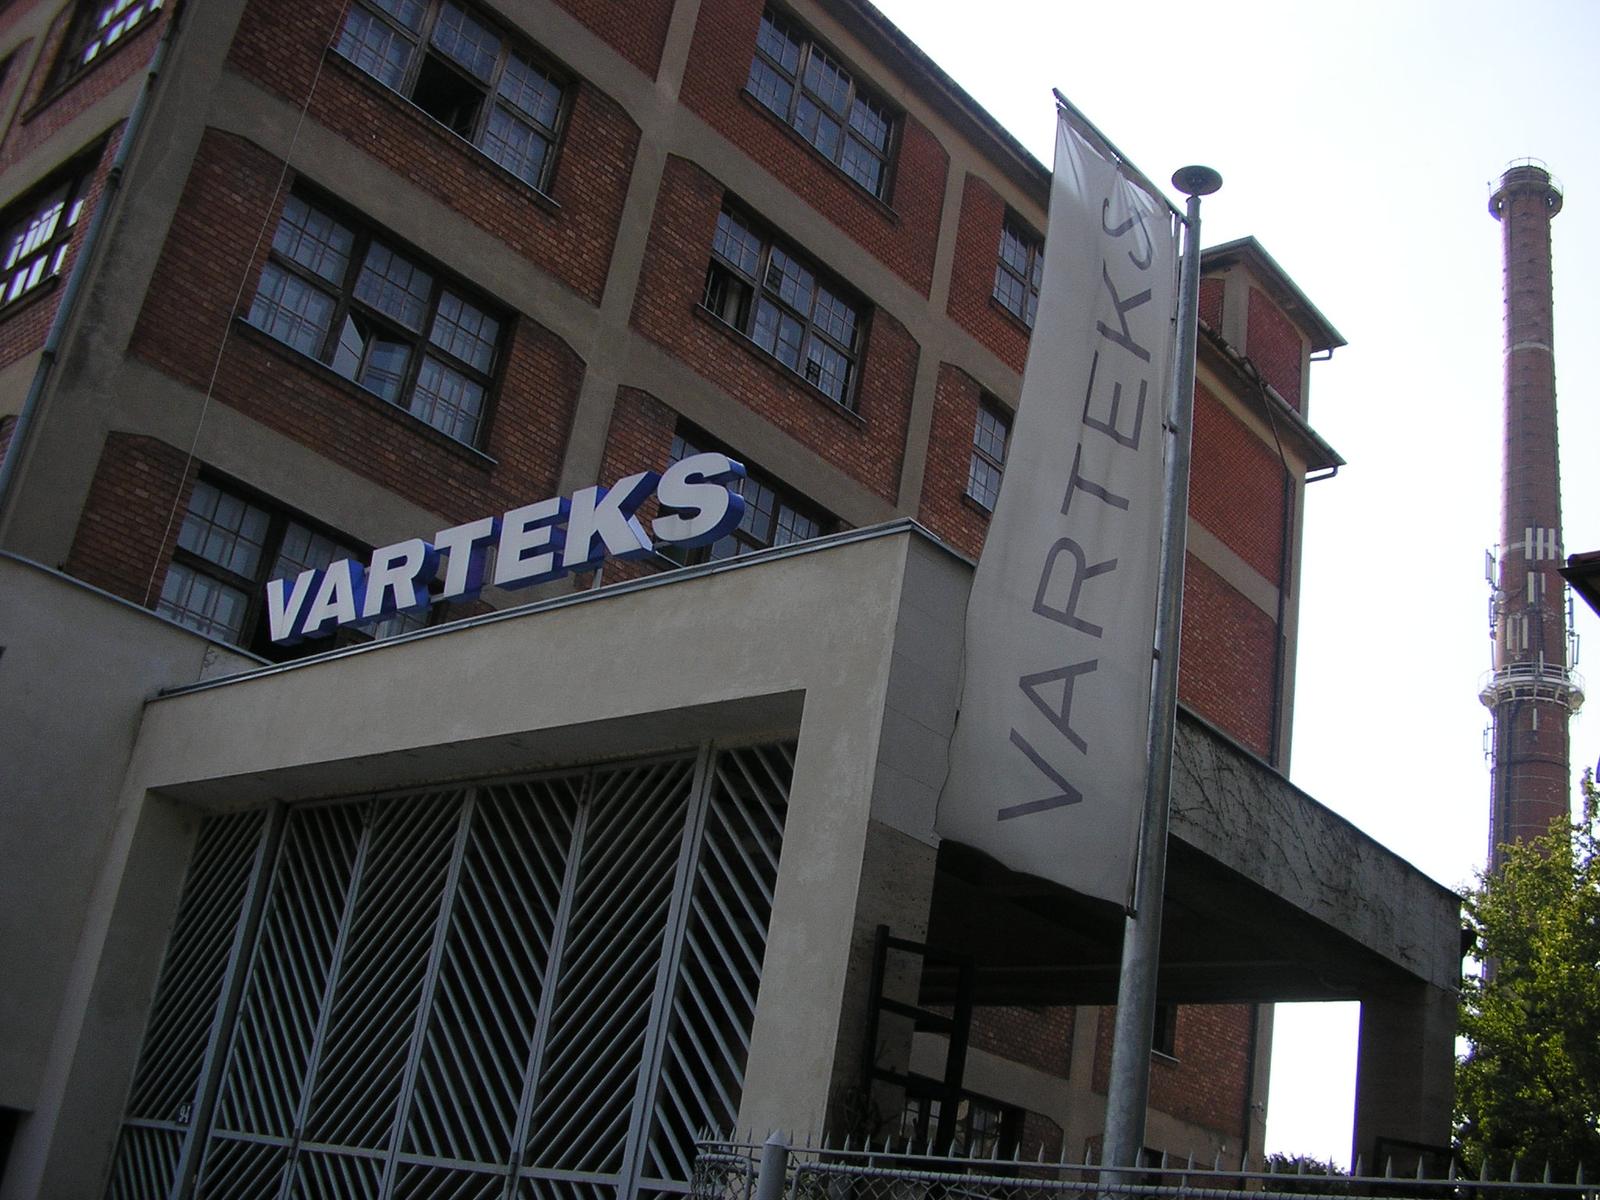 27.09.2009., Varazdin - U tvornici Varteks danas je 2800 zaposlenih, a radnici vecinom imaju minimalne place. rPhoto: Mia Horvat/24sata